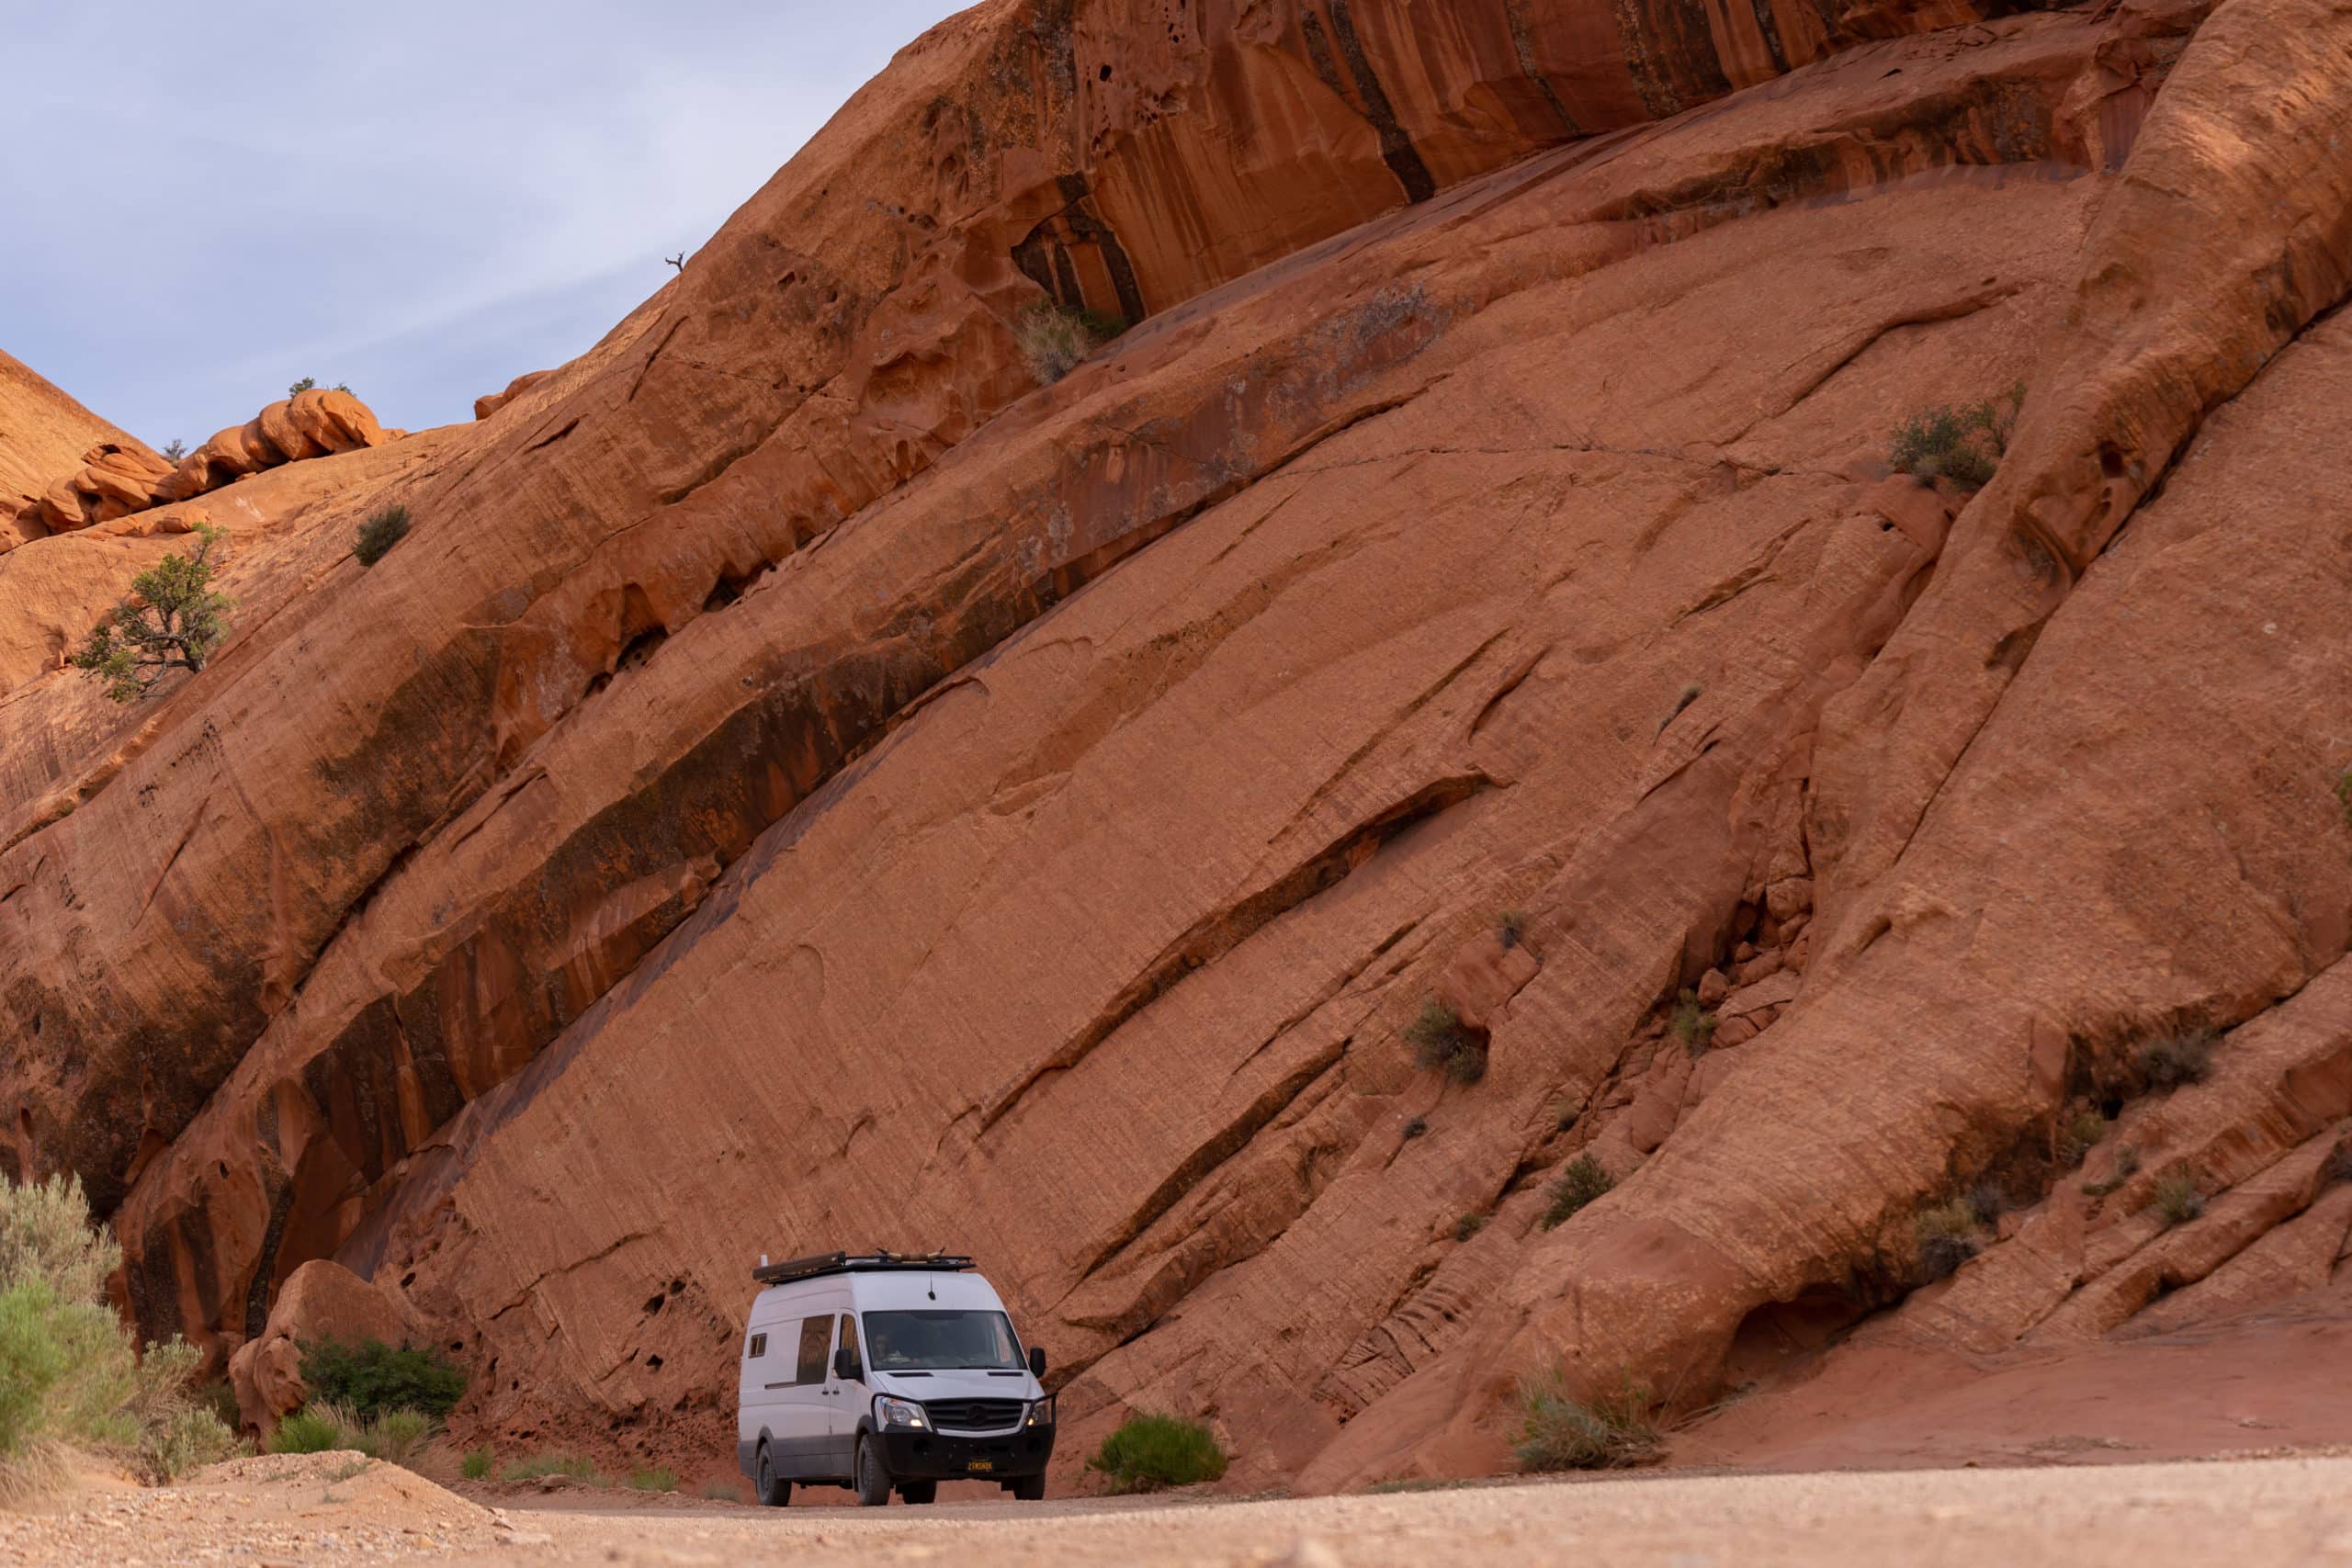 Desert Cruisers' Van in the Desert